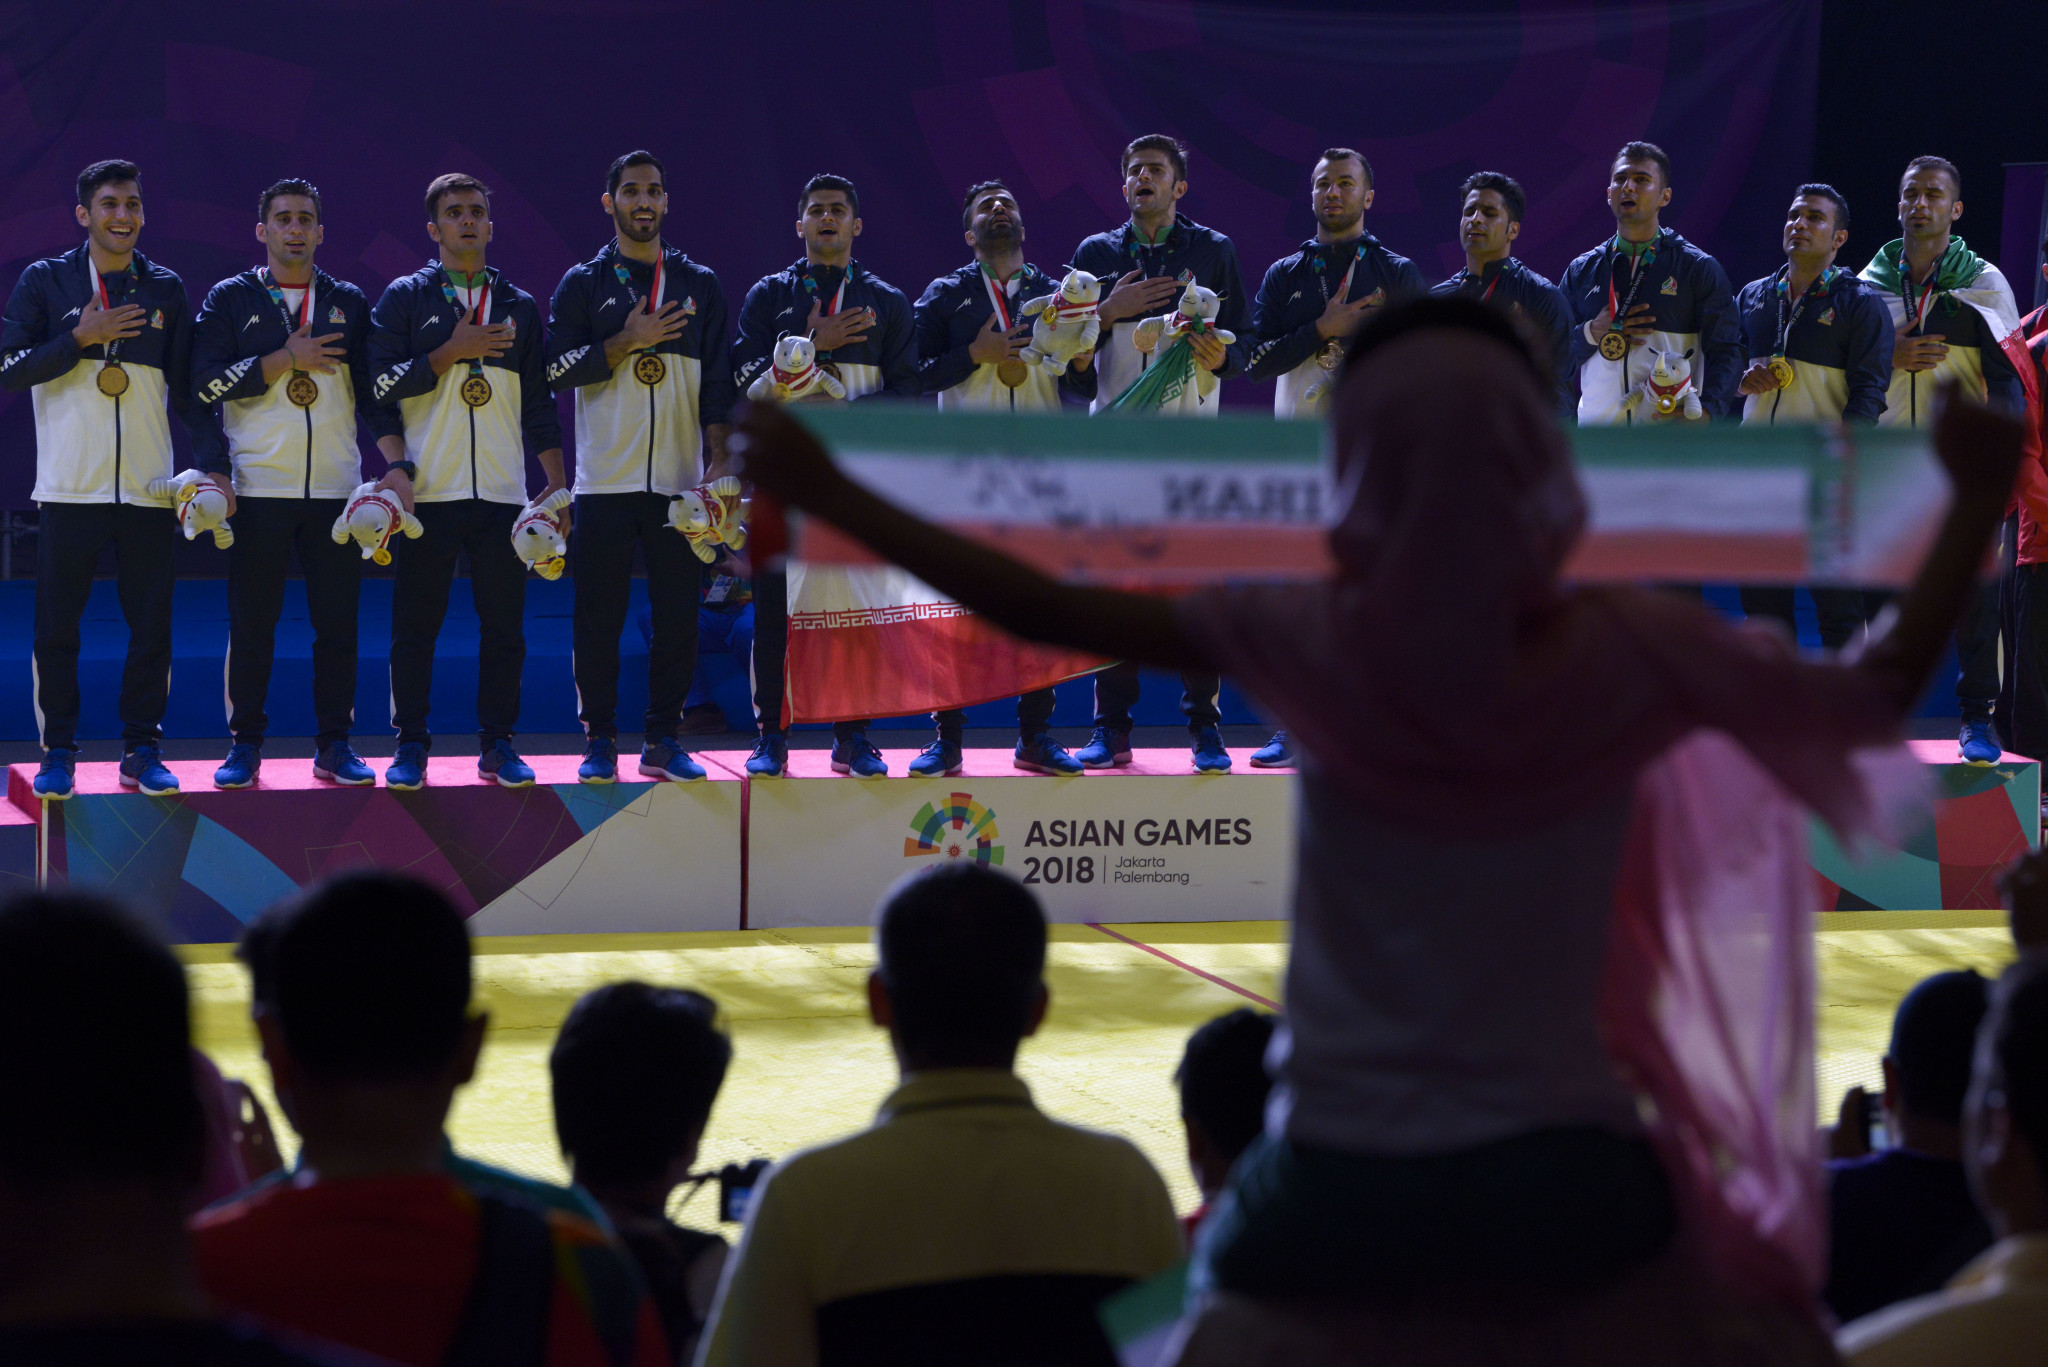 Iran dominated kabaddi at the 2018 Asian Games ©Getty Images